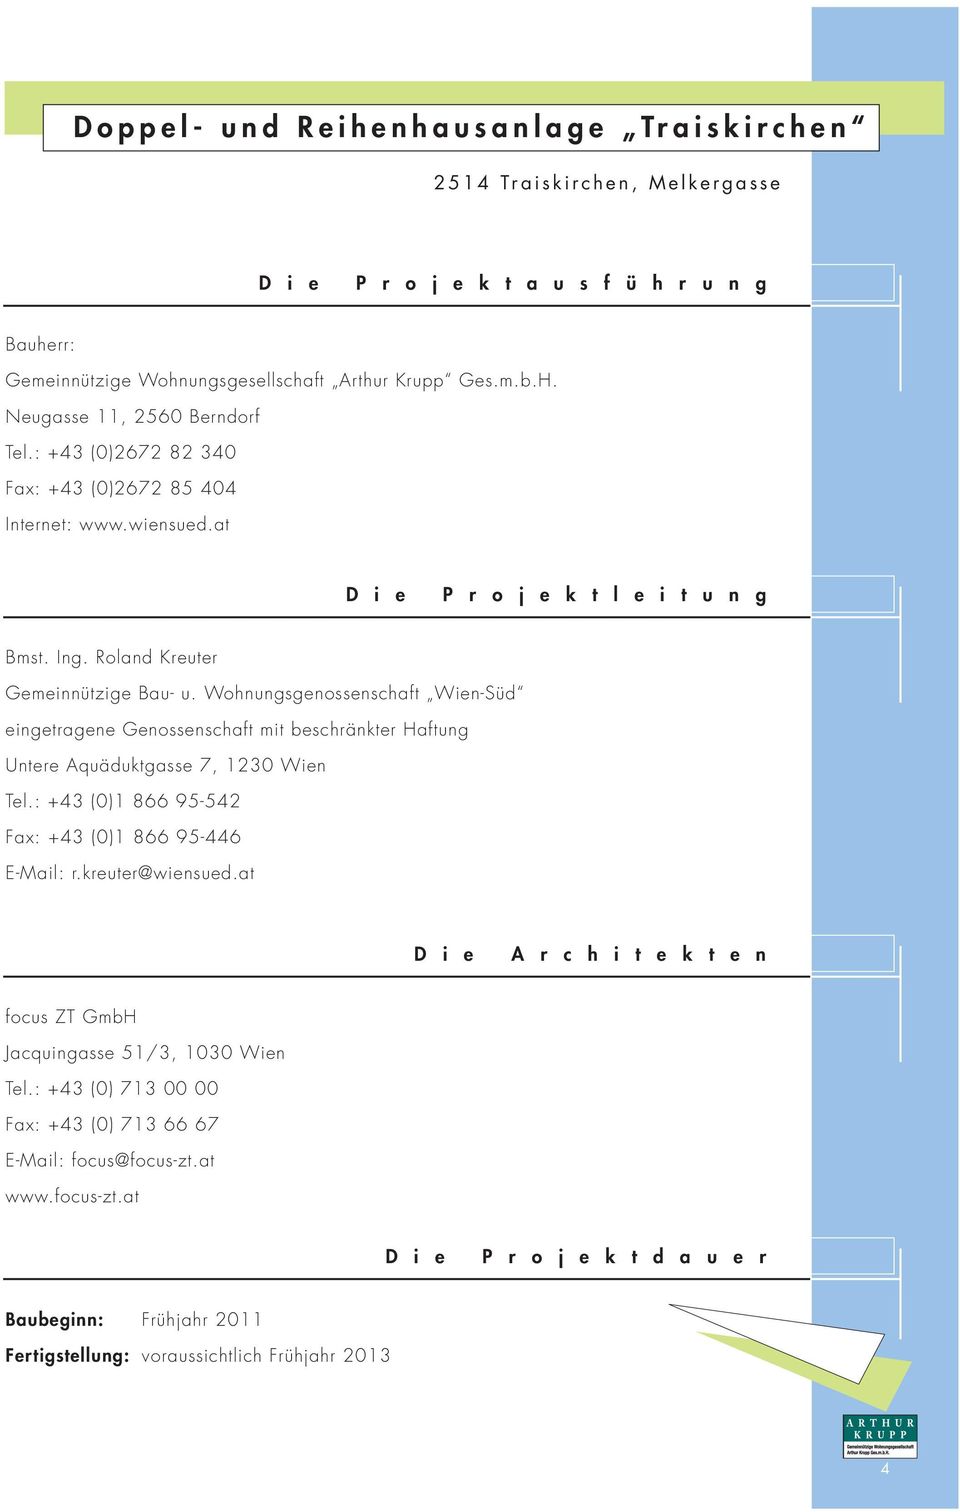 Wohnungsgenossenschaft Wien-Süd eingetragene Genossenschaft mit beschränkter Haftung Untere Aquäduktgasse 7, 1230 Wien Tel.: +43 (0)1 866 95-542 Fax: +43 (0)1 866 95-446 E-Mail: r.